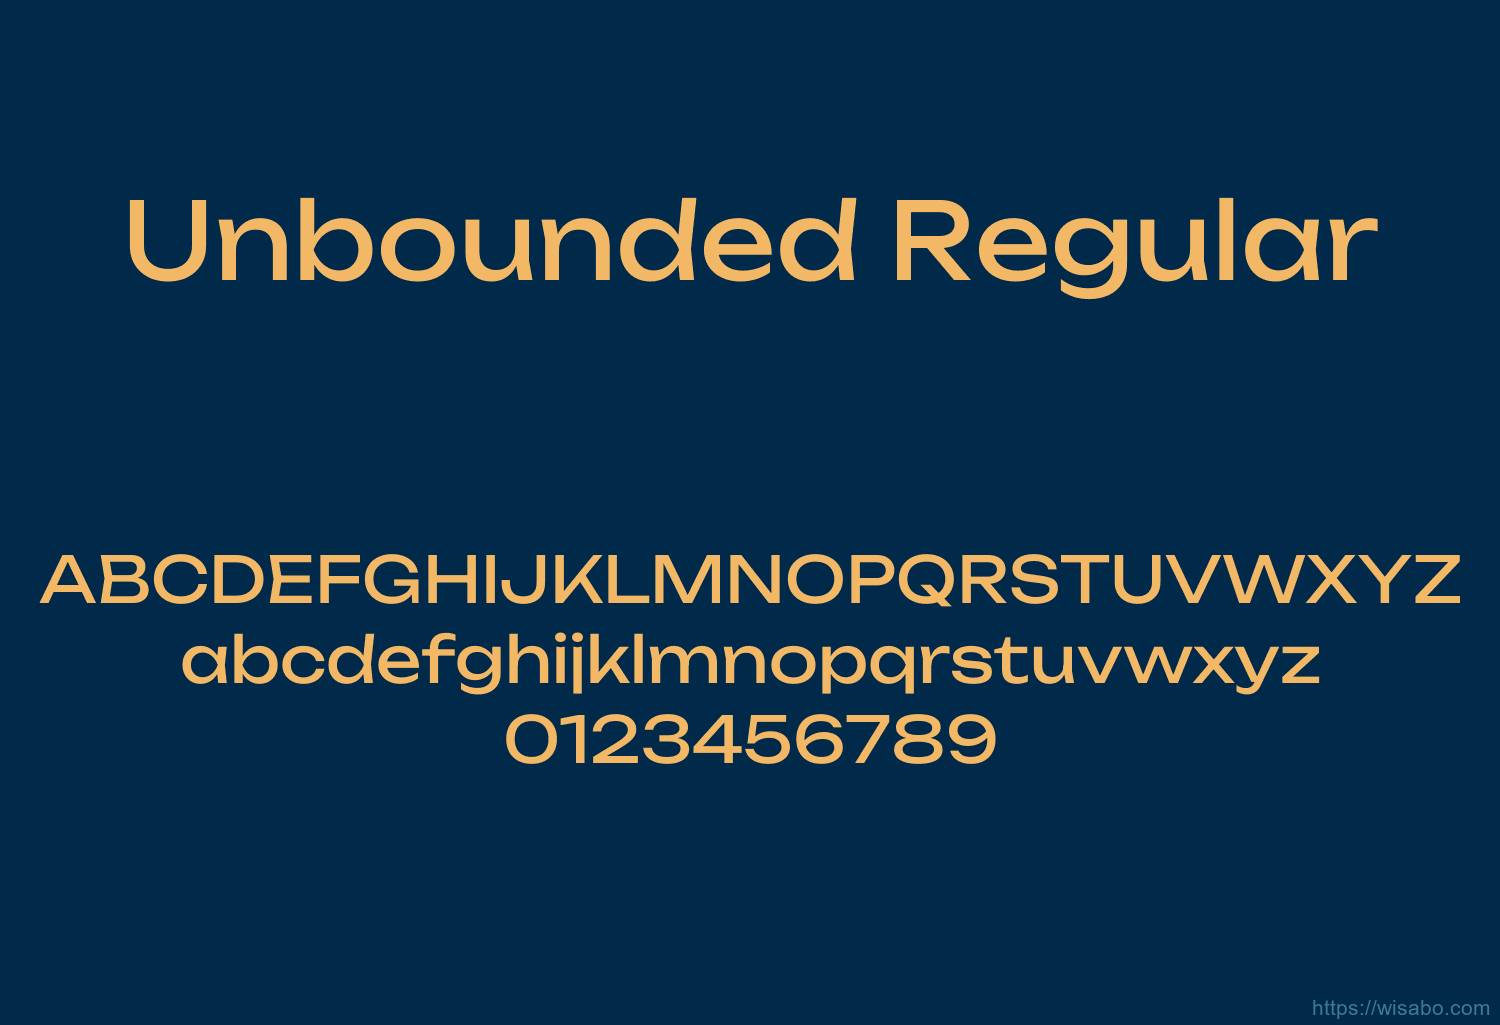 Unbounded Regular